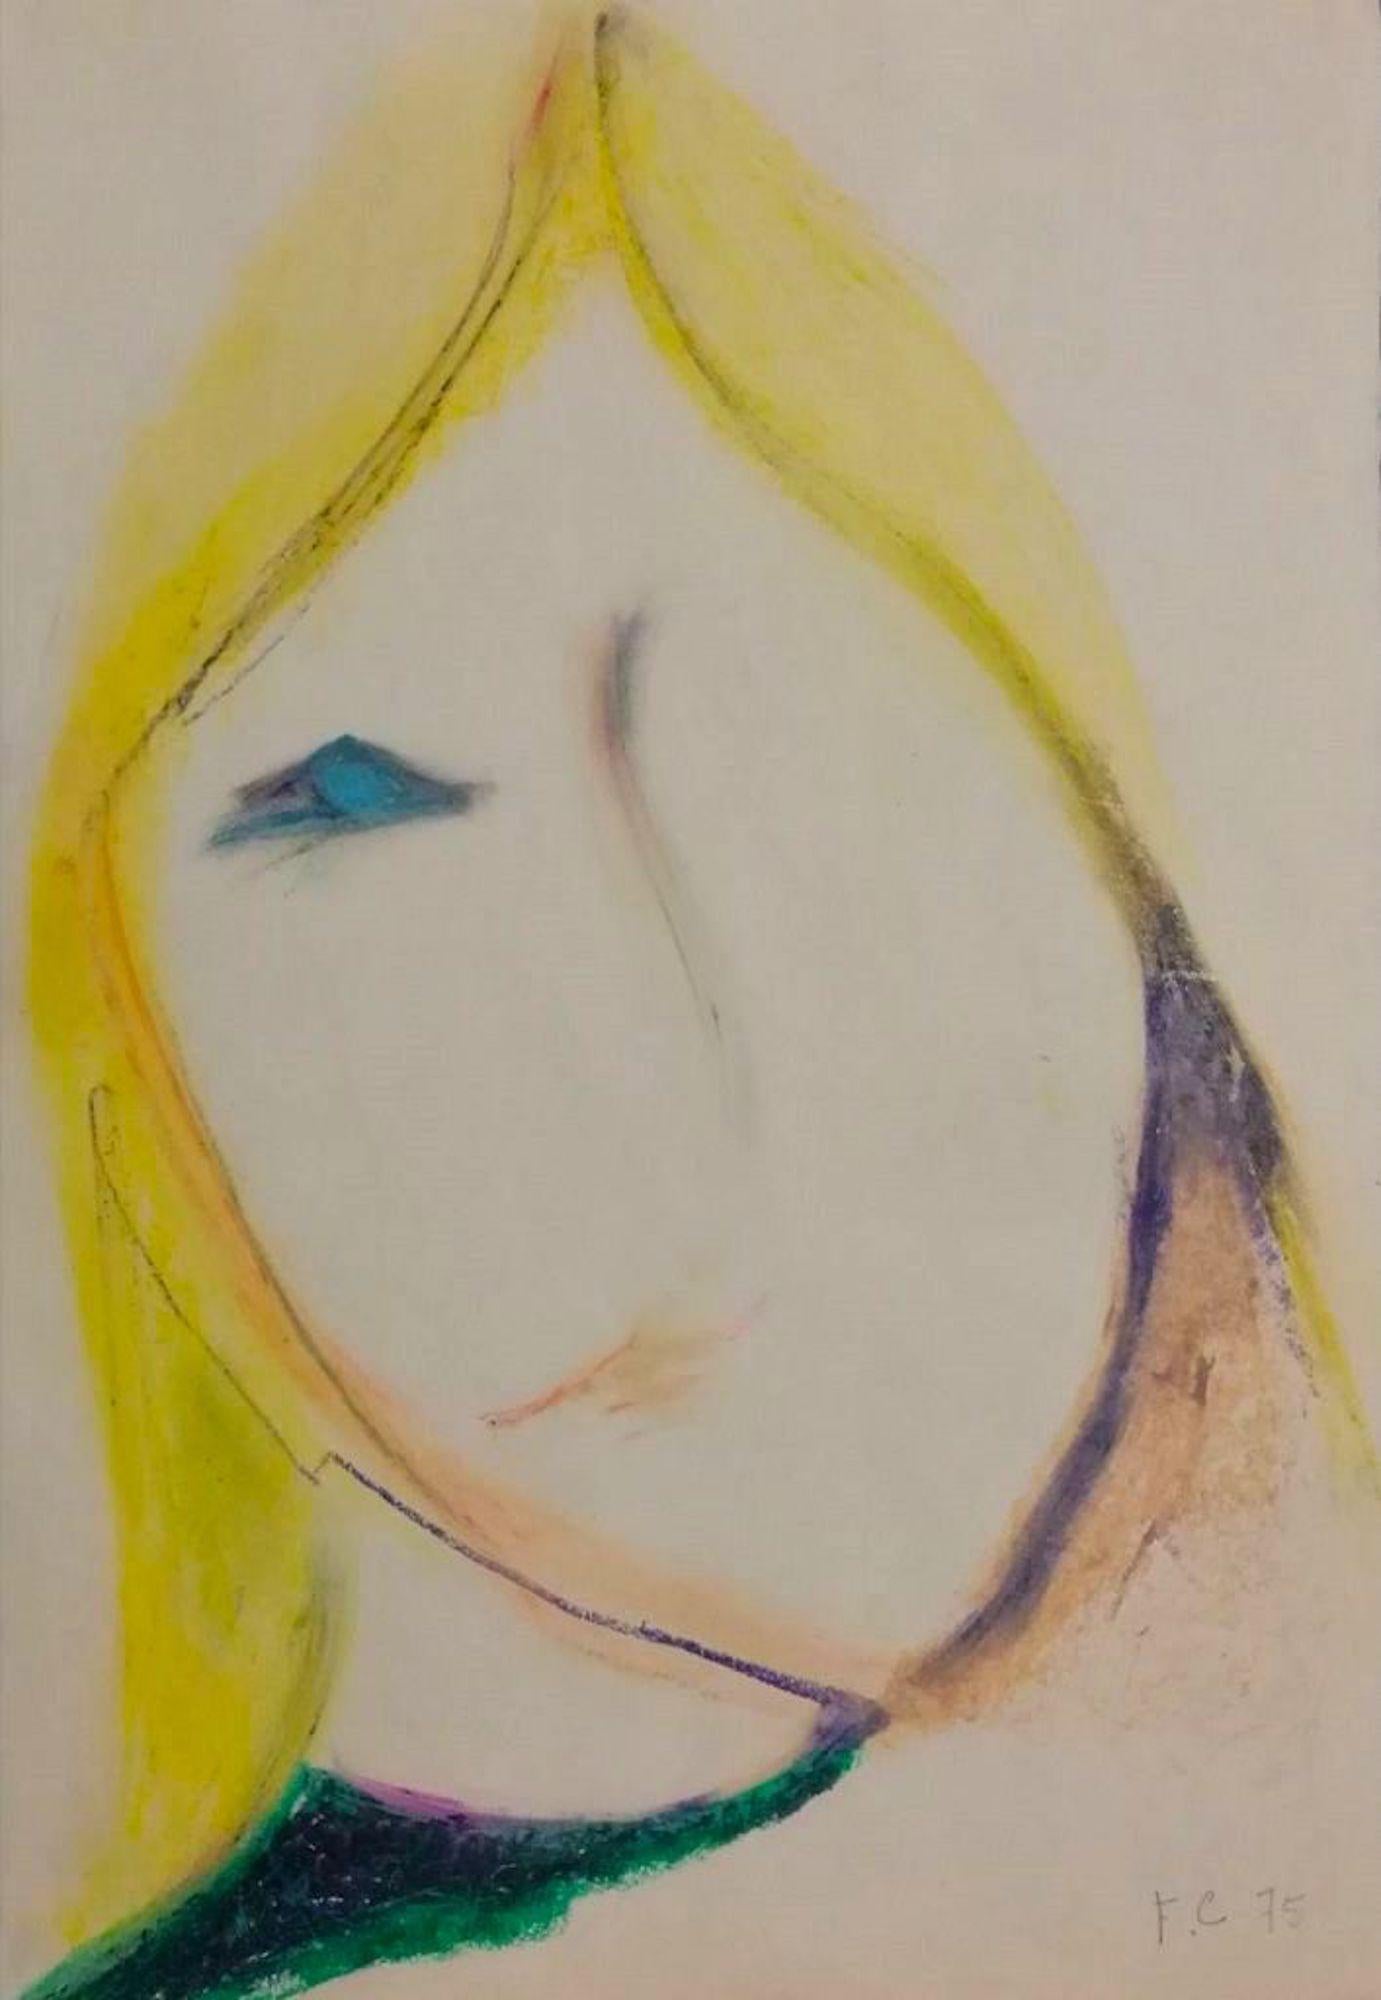 Portrait est une œuvre d'art originale réalisée par François Chapuis dans les années 1970. Pastel sur papier ; dans le coin inférieur droit, l'artiste a écrit ses initiales au crayon (F.C.). Bonnes conditions. 

L'œuvre d'art représente un visage